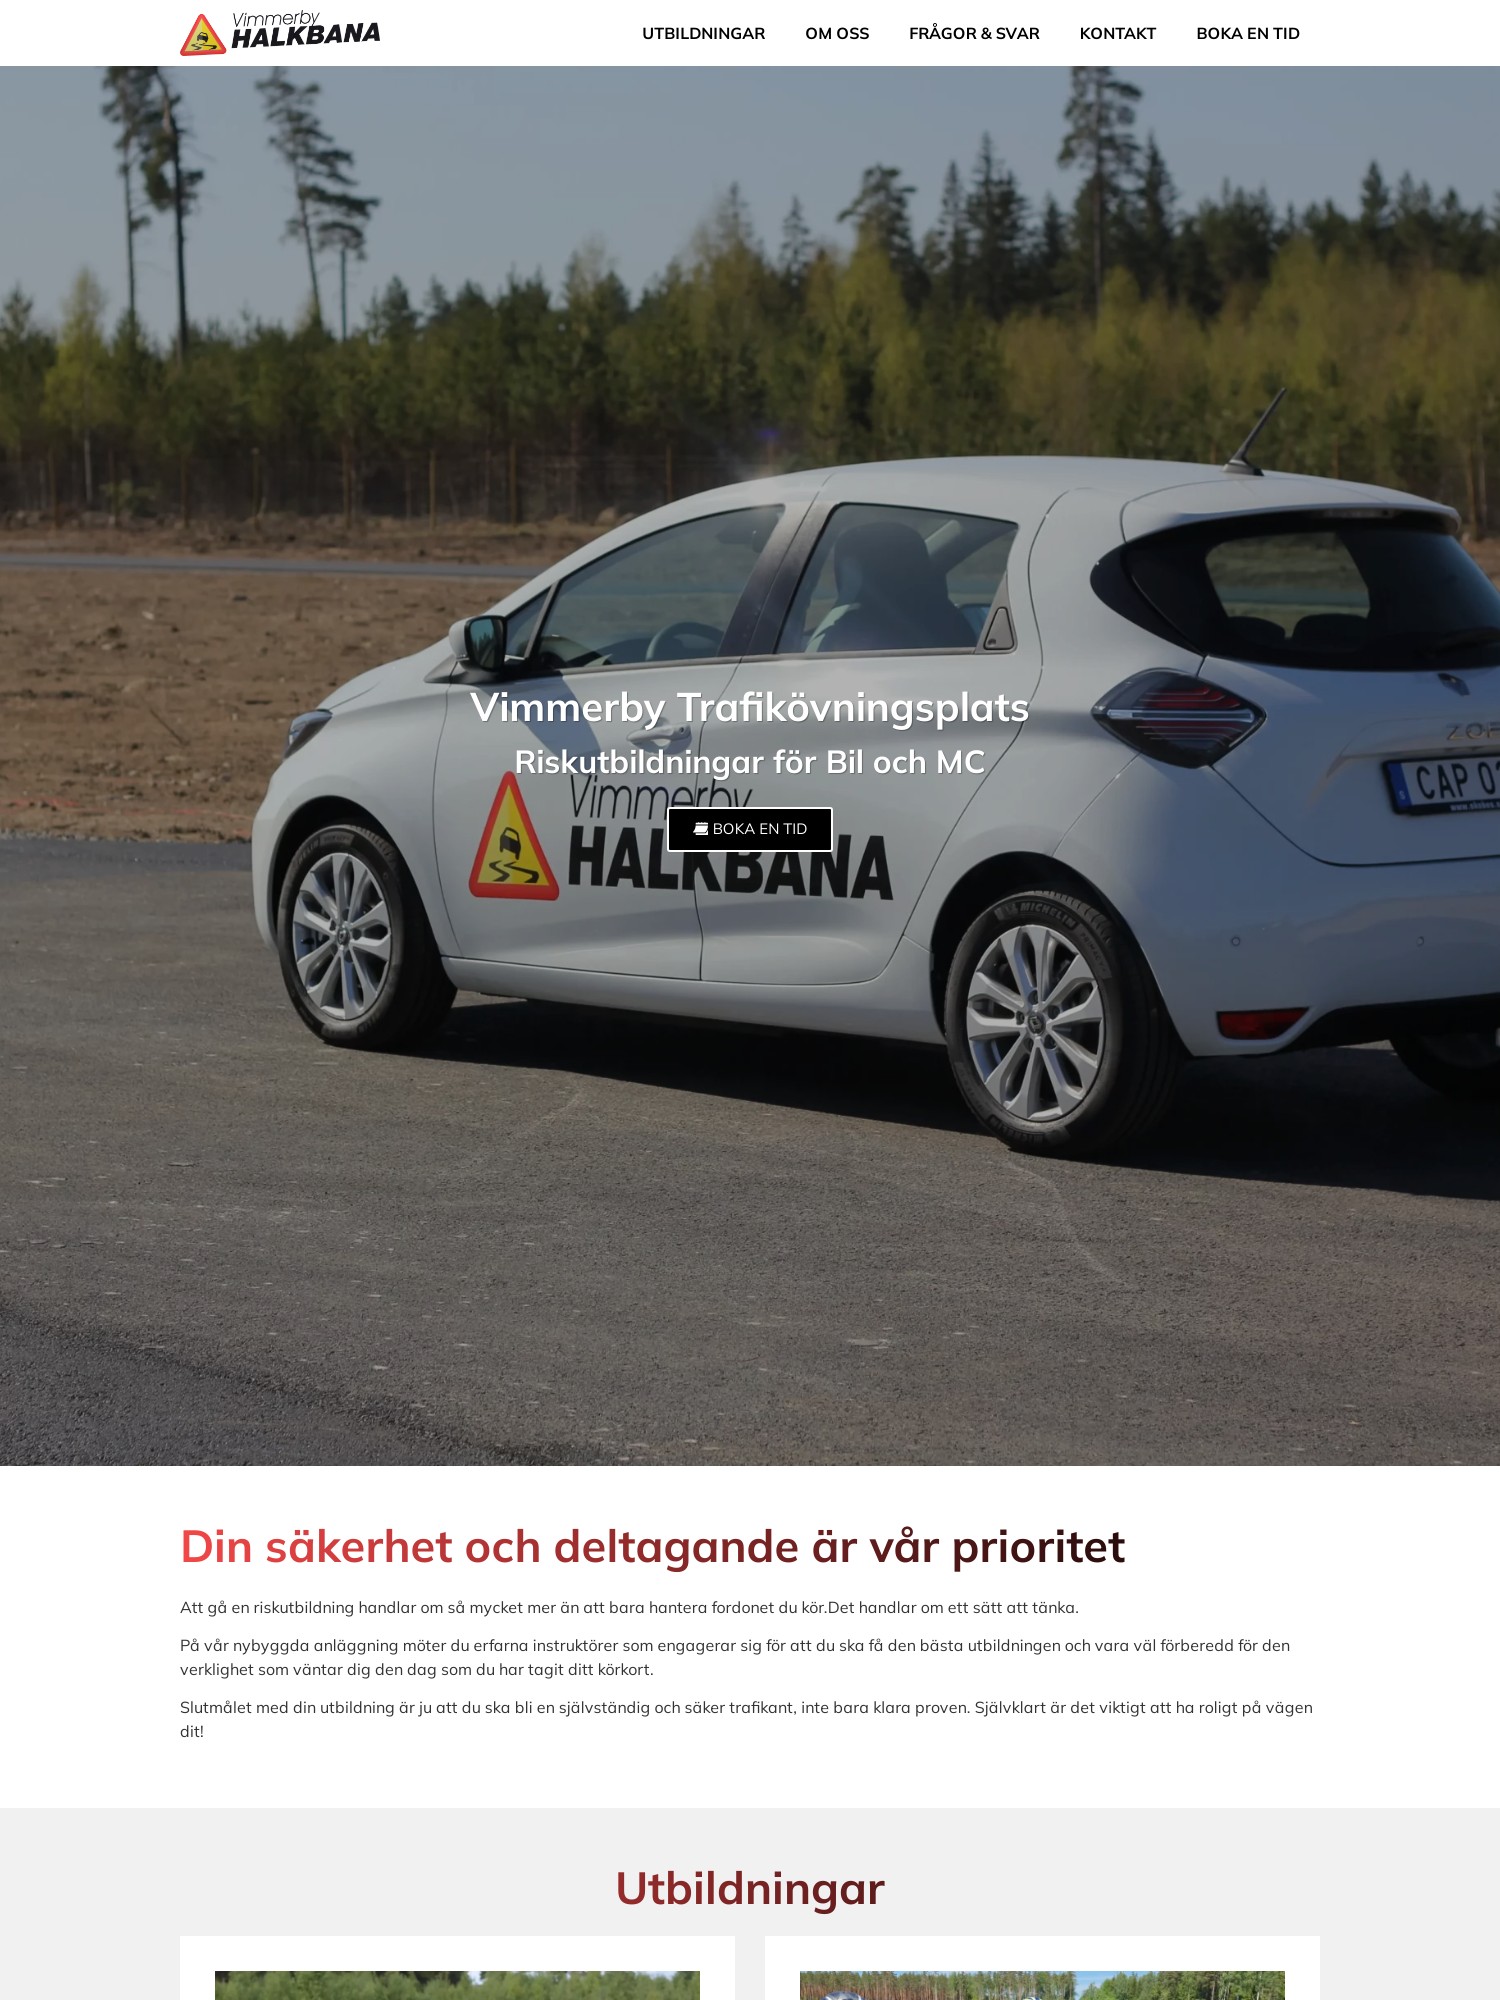 Vimmerby Trafikovningsplats – Riskutbildningar for bil och MC Interwebsite Webbyrå